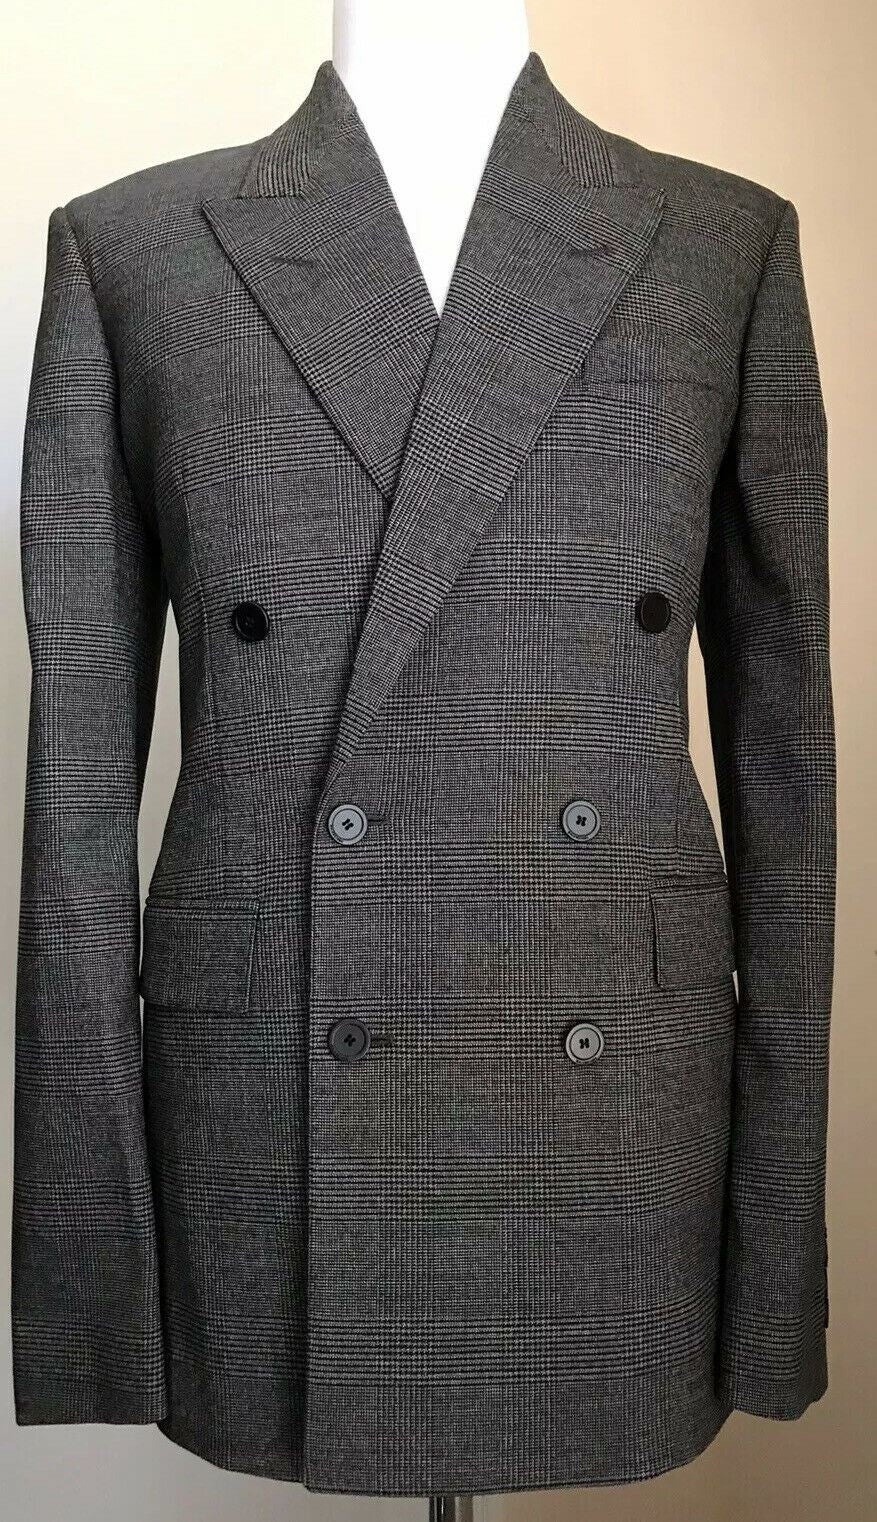 NWT $3900 Balenciaga Men Jacket Blazer DK Gray 38 US ( 48 Eu ) Italy